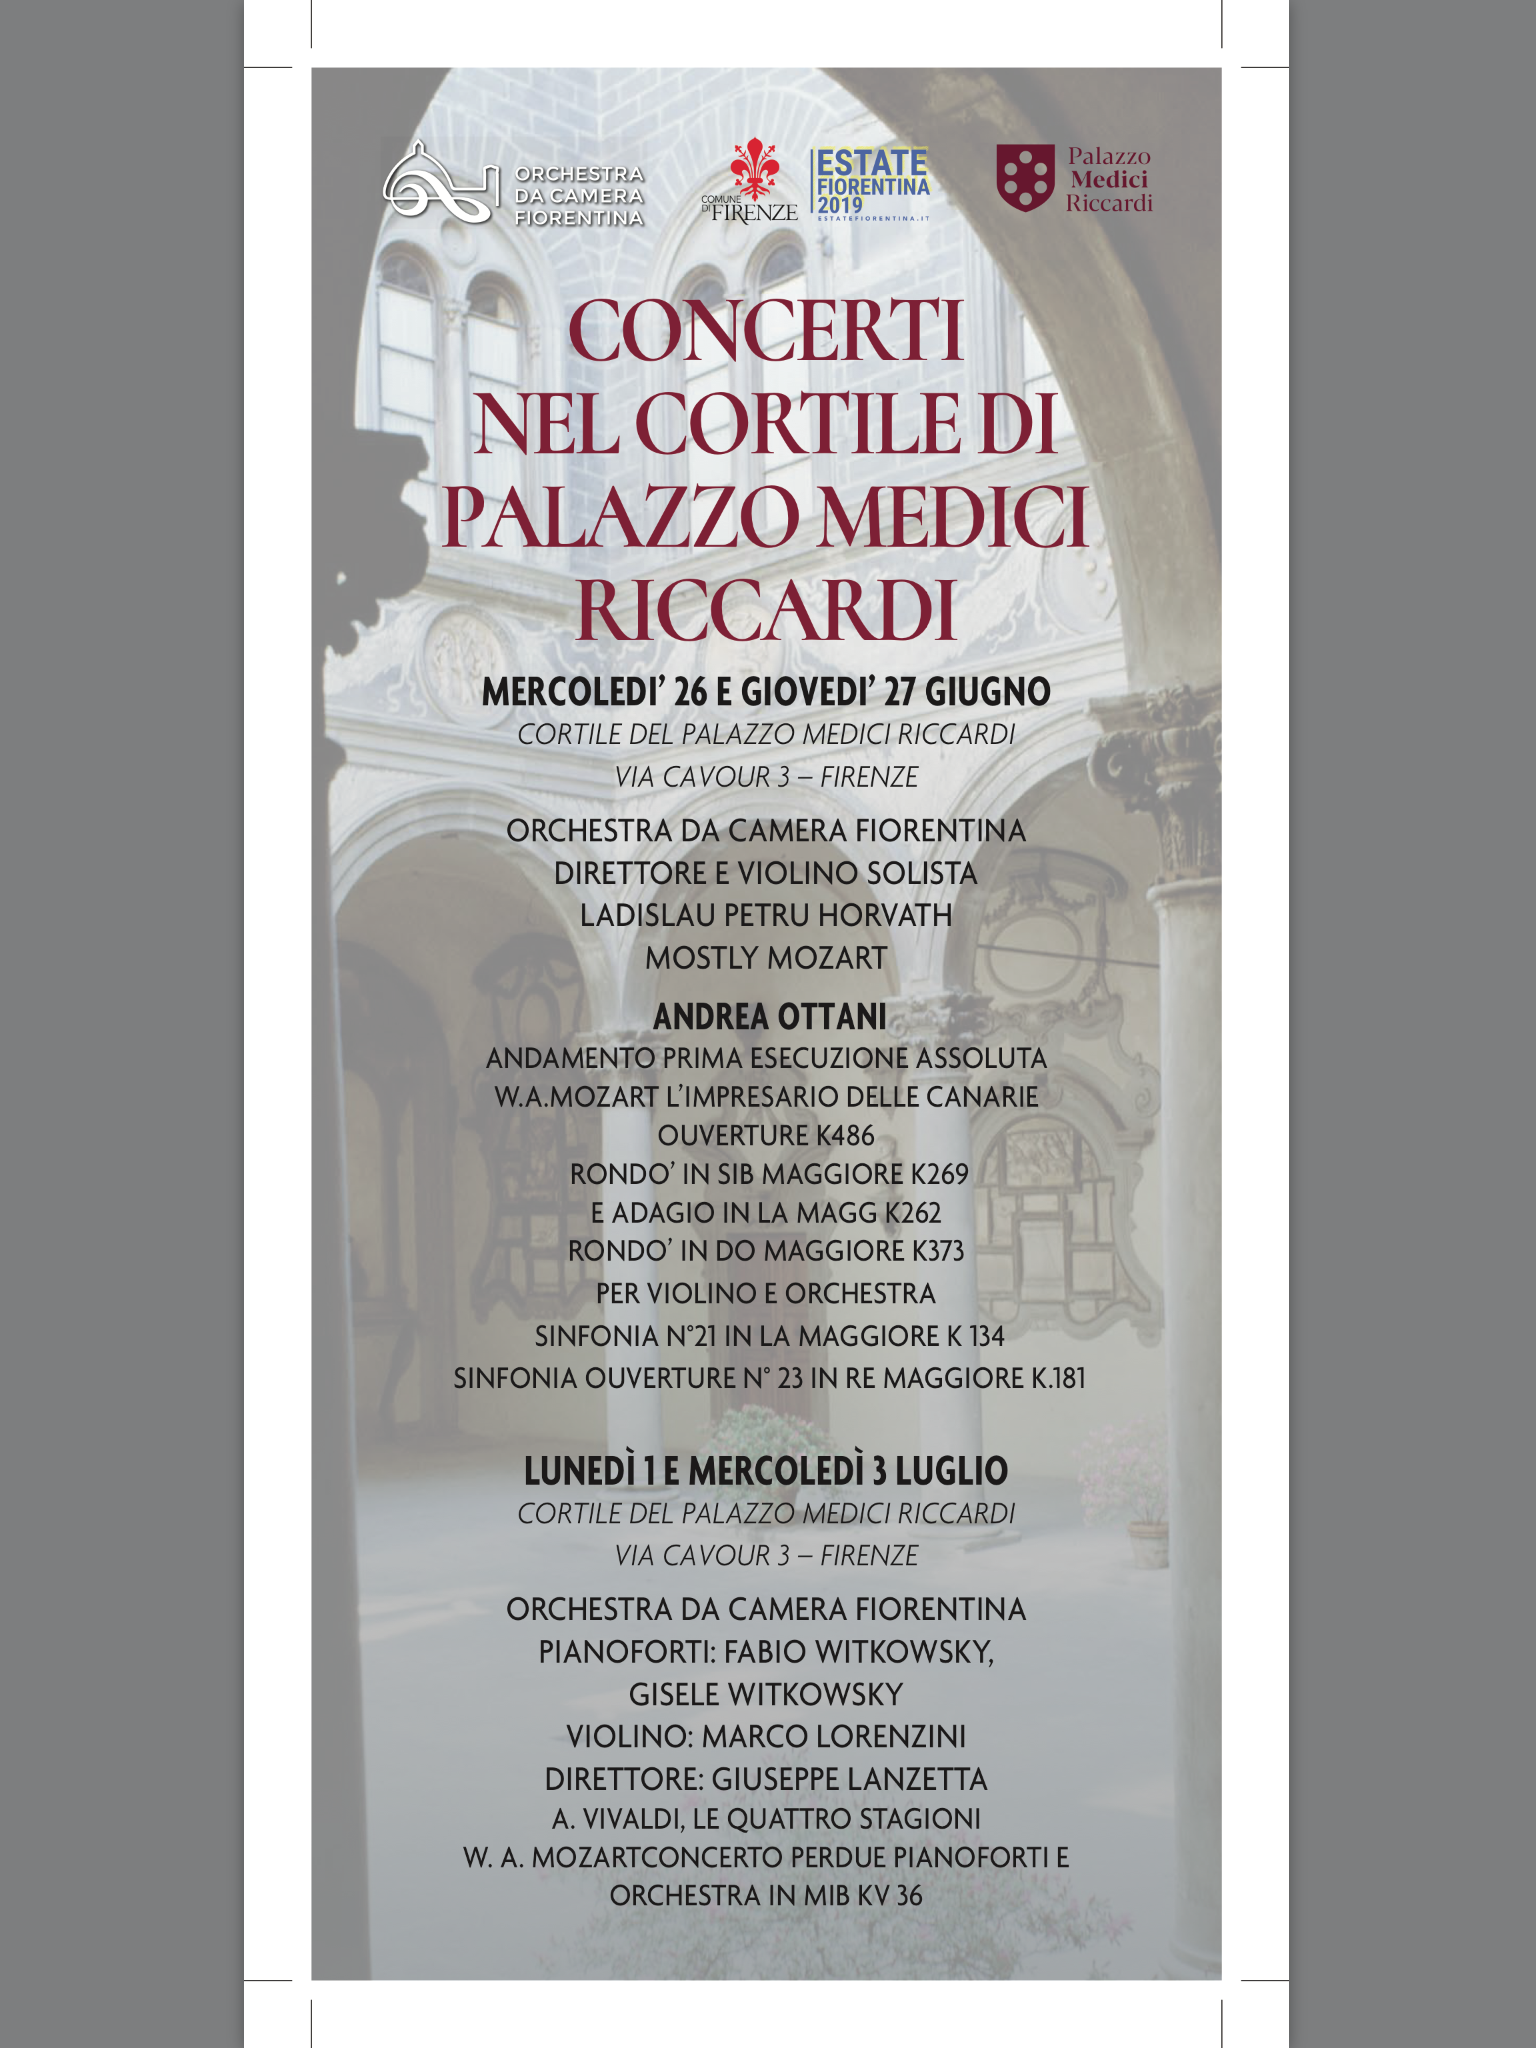 Il programma dei concerti in Palazzo Medici Riccardi